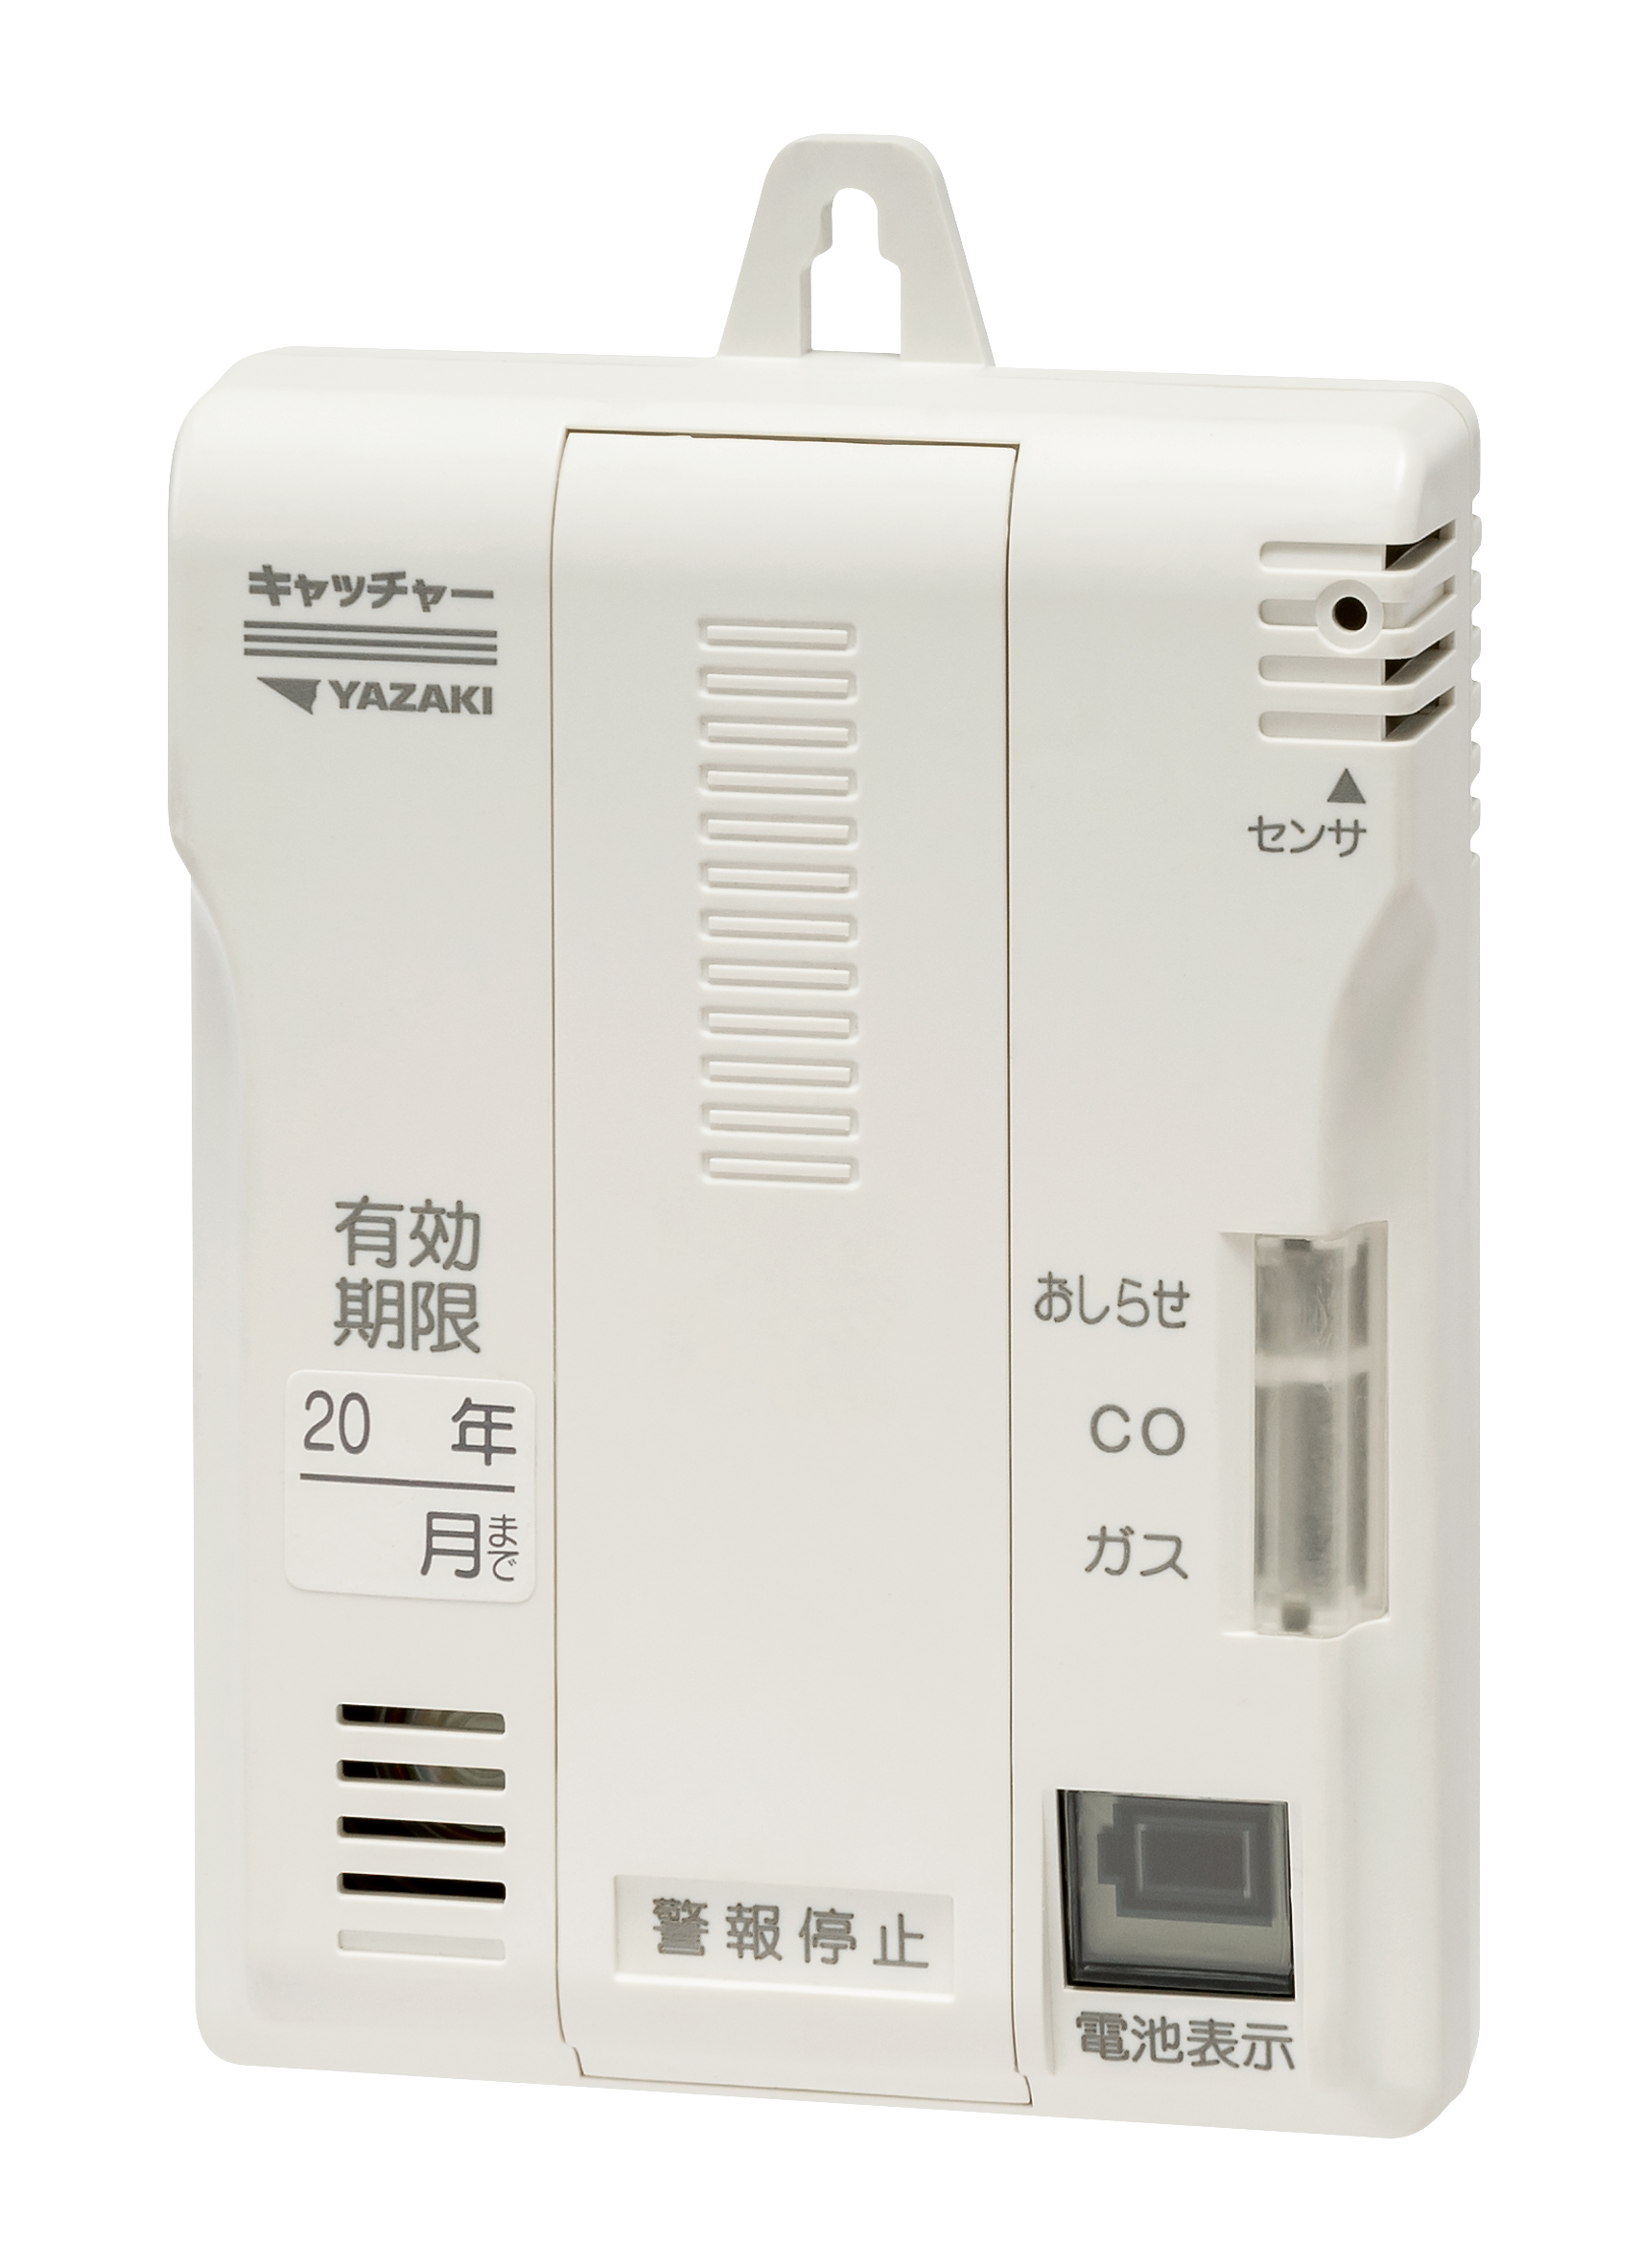 【矢崎エナジーシステム】電池式都市ガス警報器を発売 業界最小で有効期限５年に延長の画像